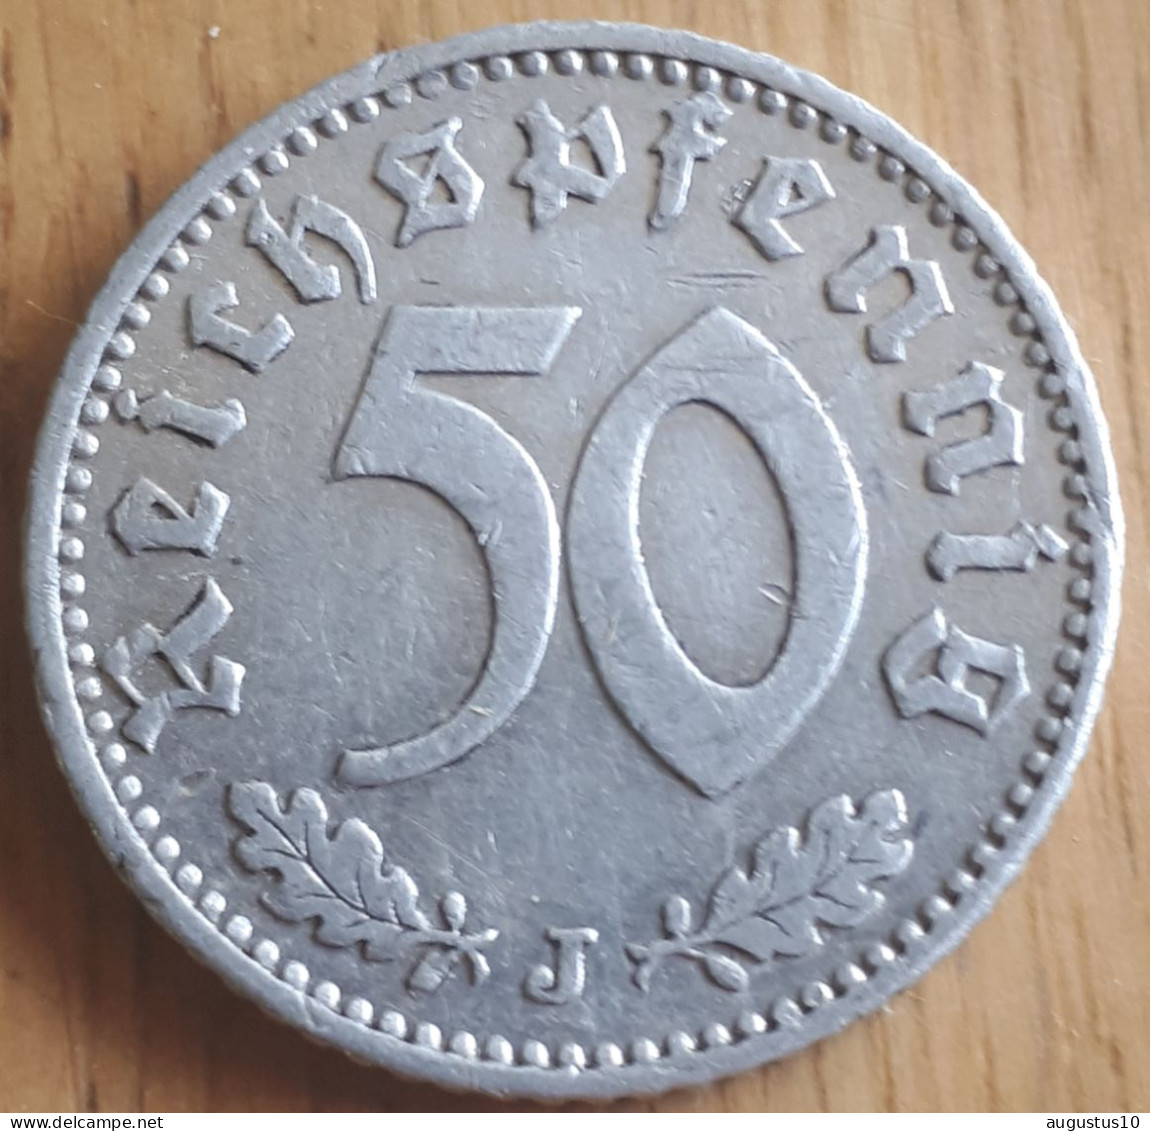 DUITSLAND: SCHAARSE 50 REICHSPFENNIG 1940 J KM 96 XF !! - 50 Reichspfennig